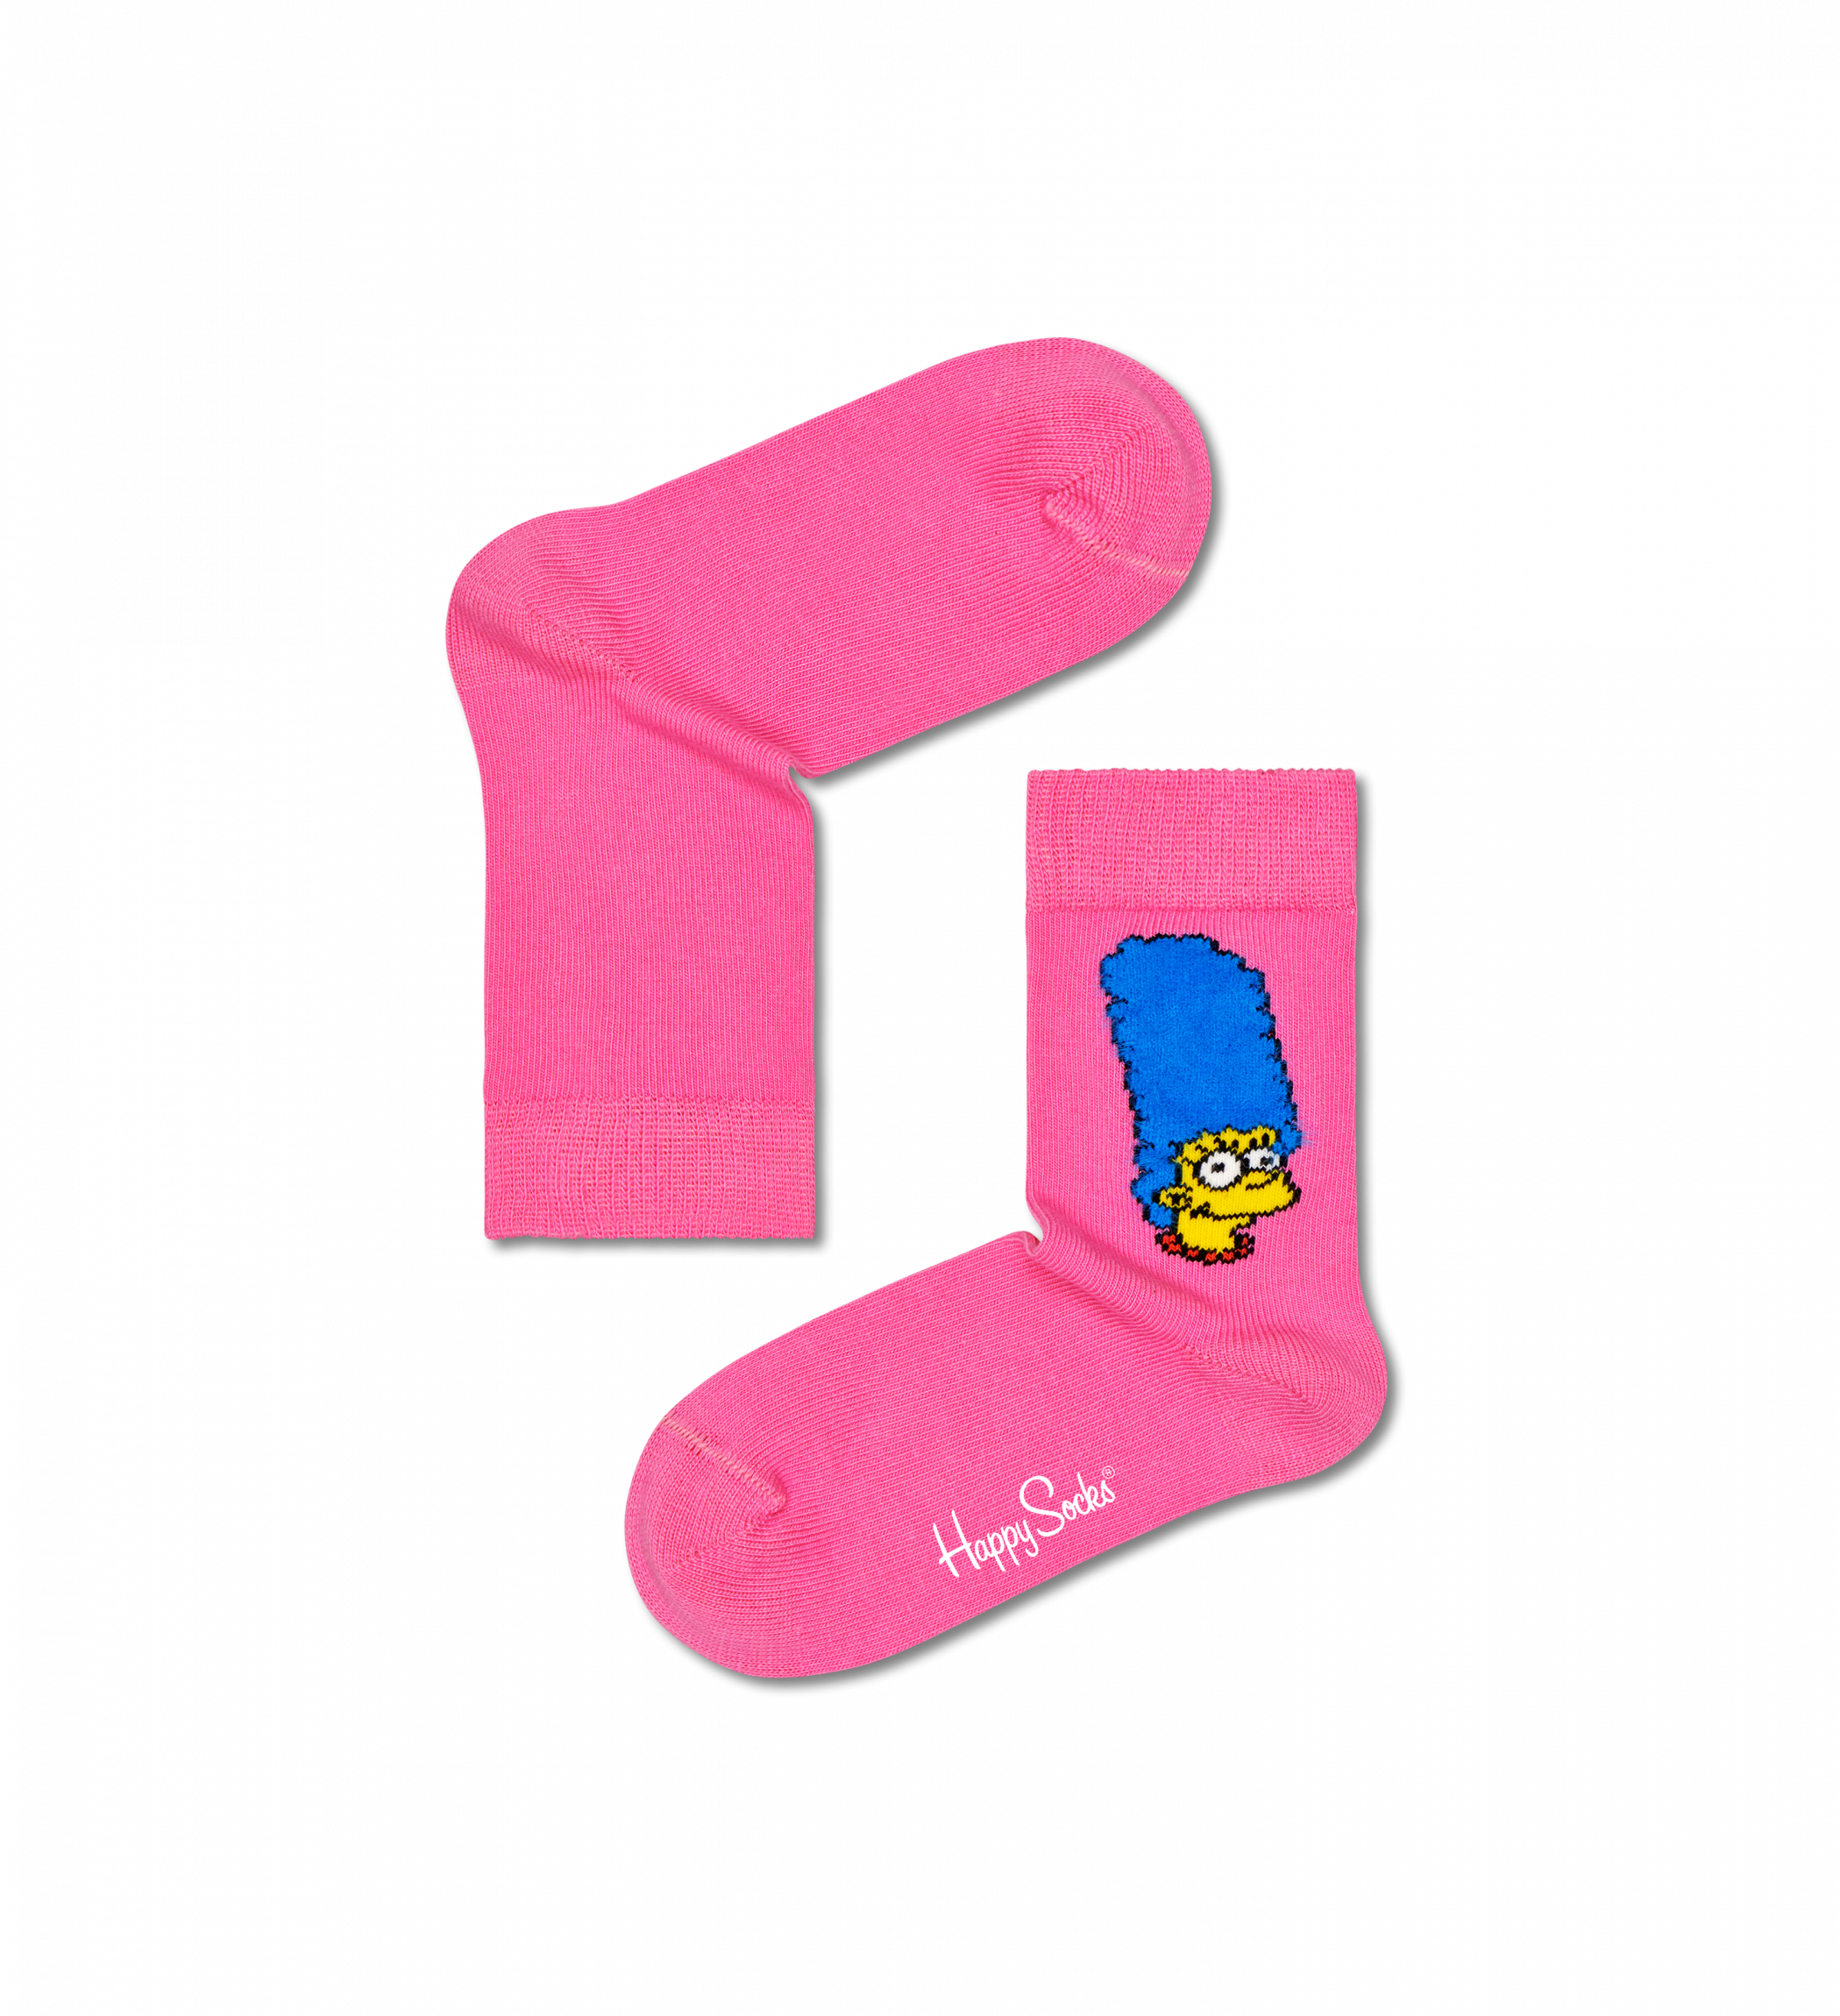 Detské ružové ponožky Happy Socks x The Simpsons, vzor Marge